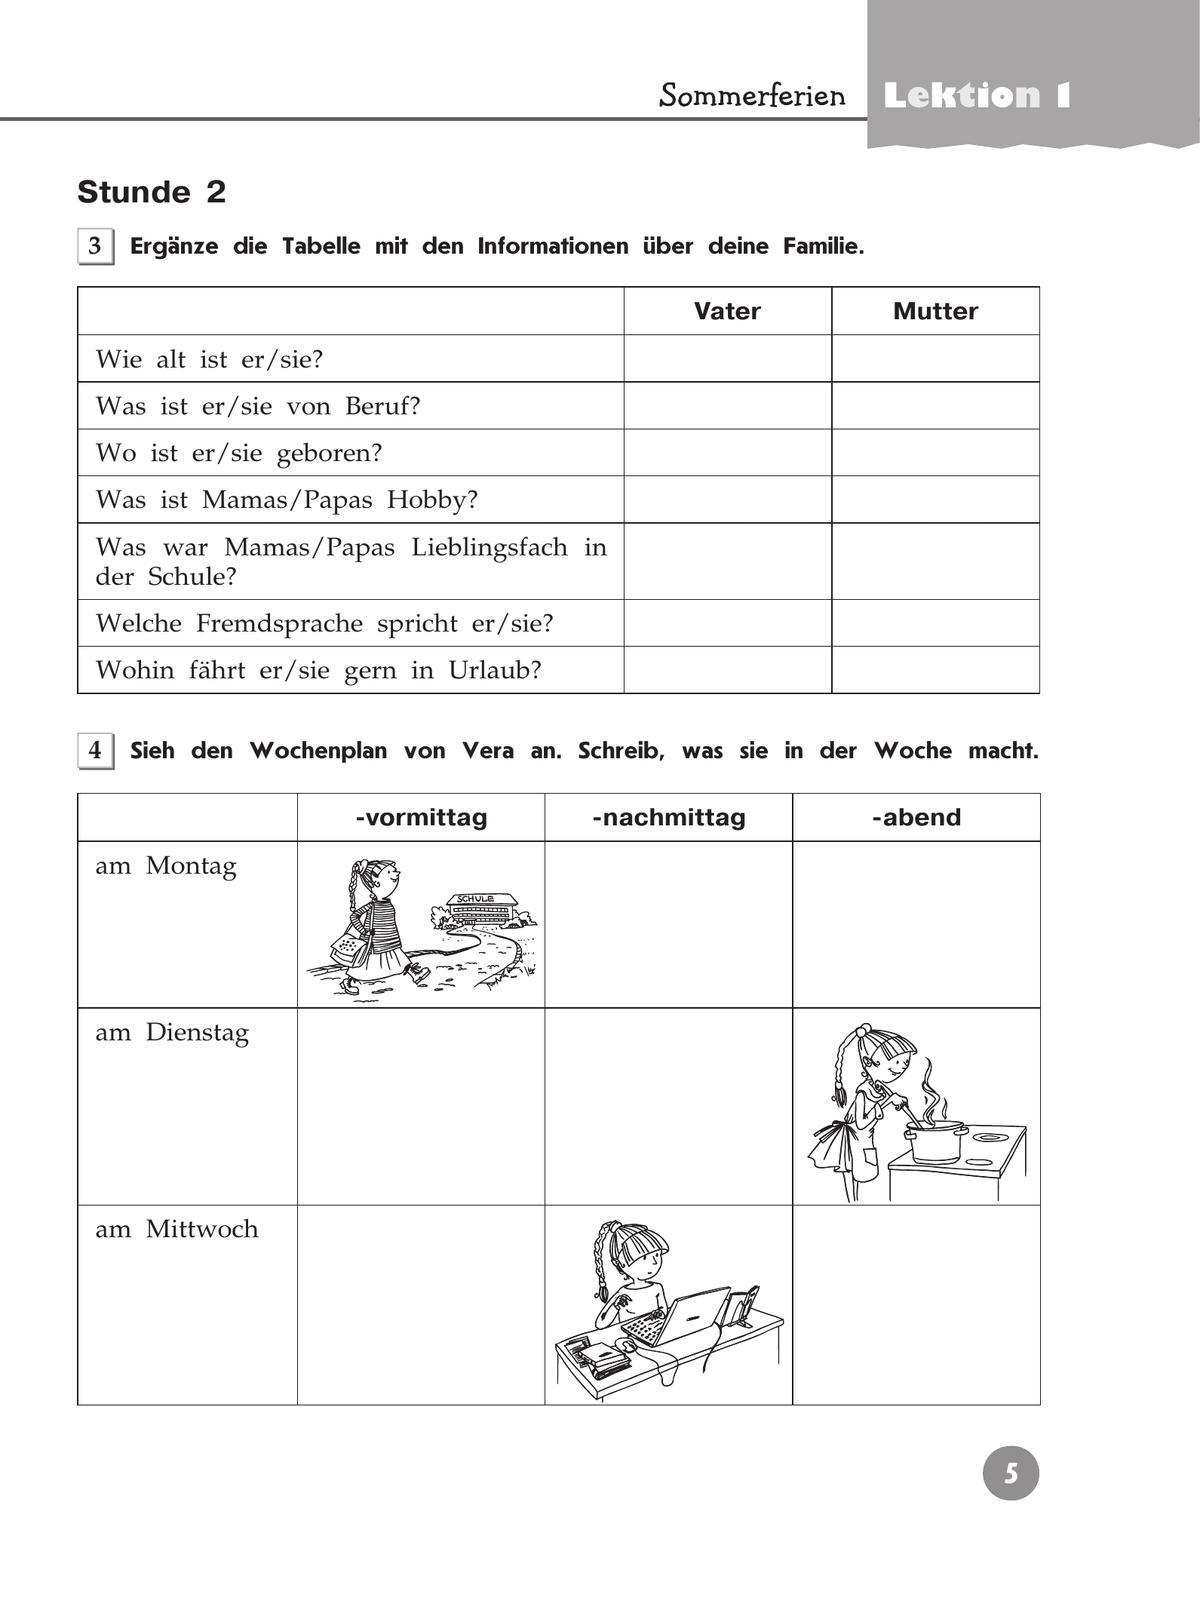 Немецкий язык. Рабочая тетрадь. 7 класс 3